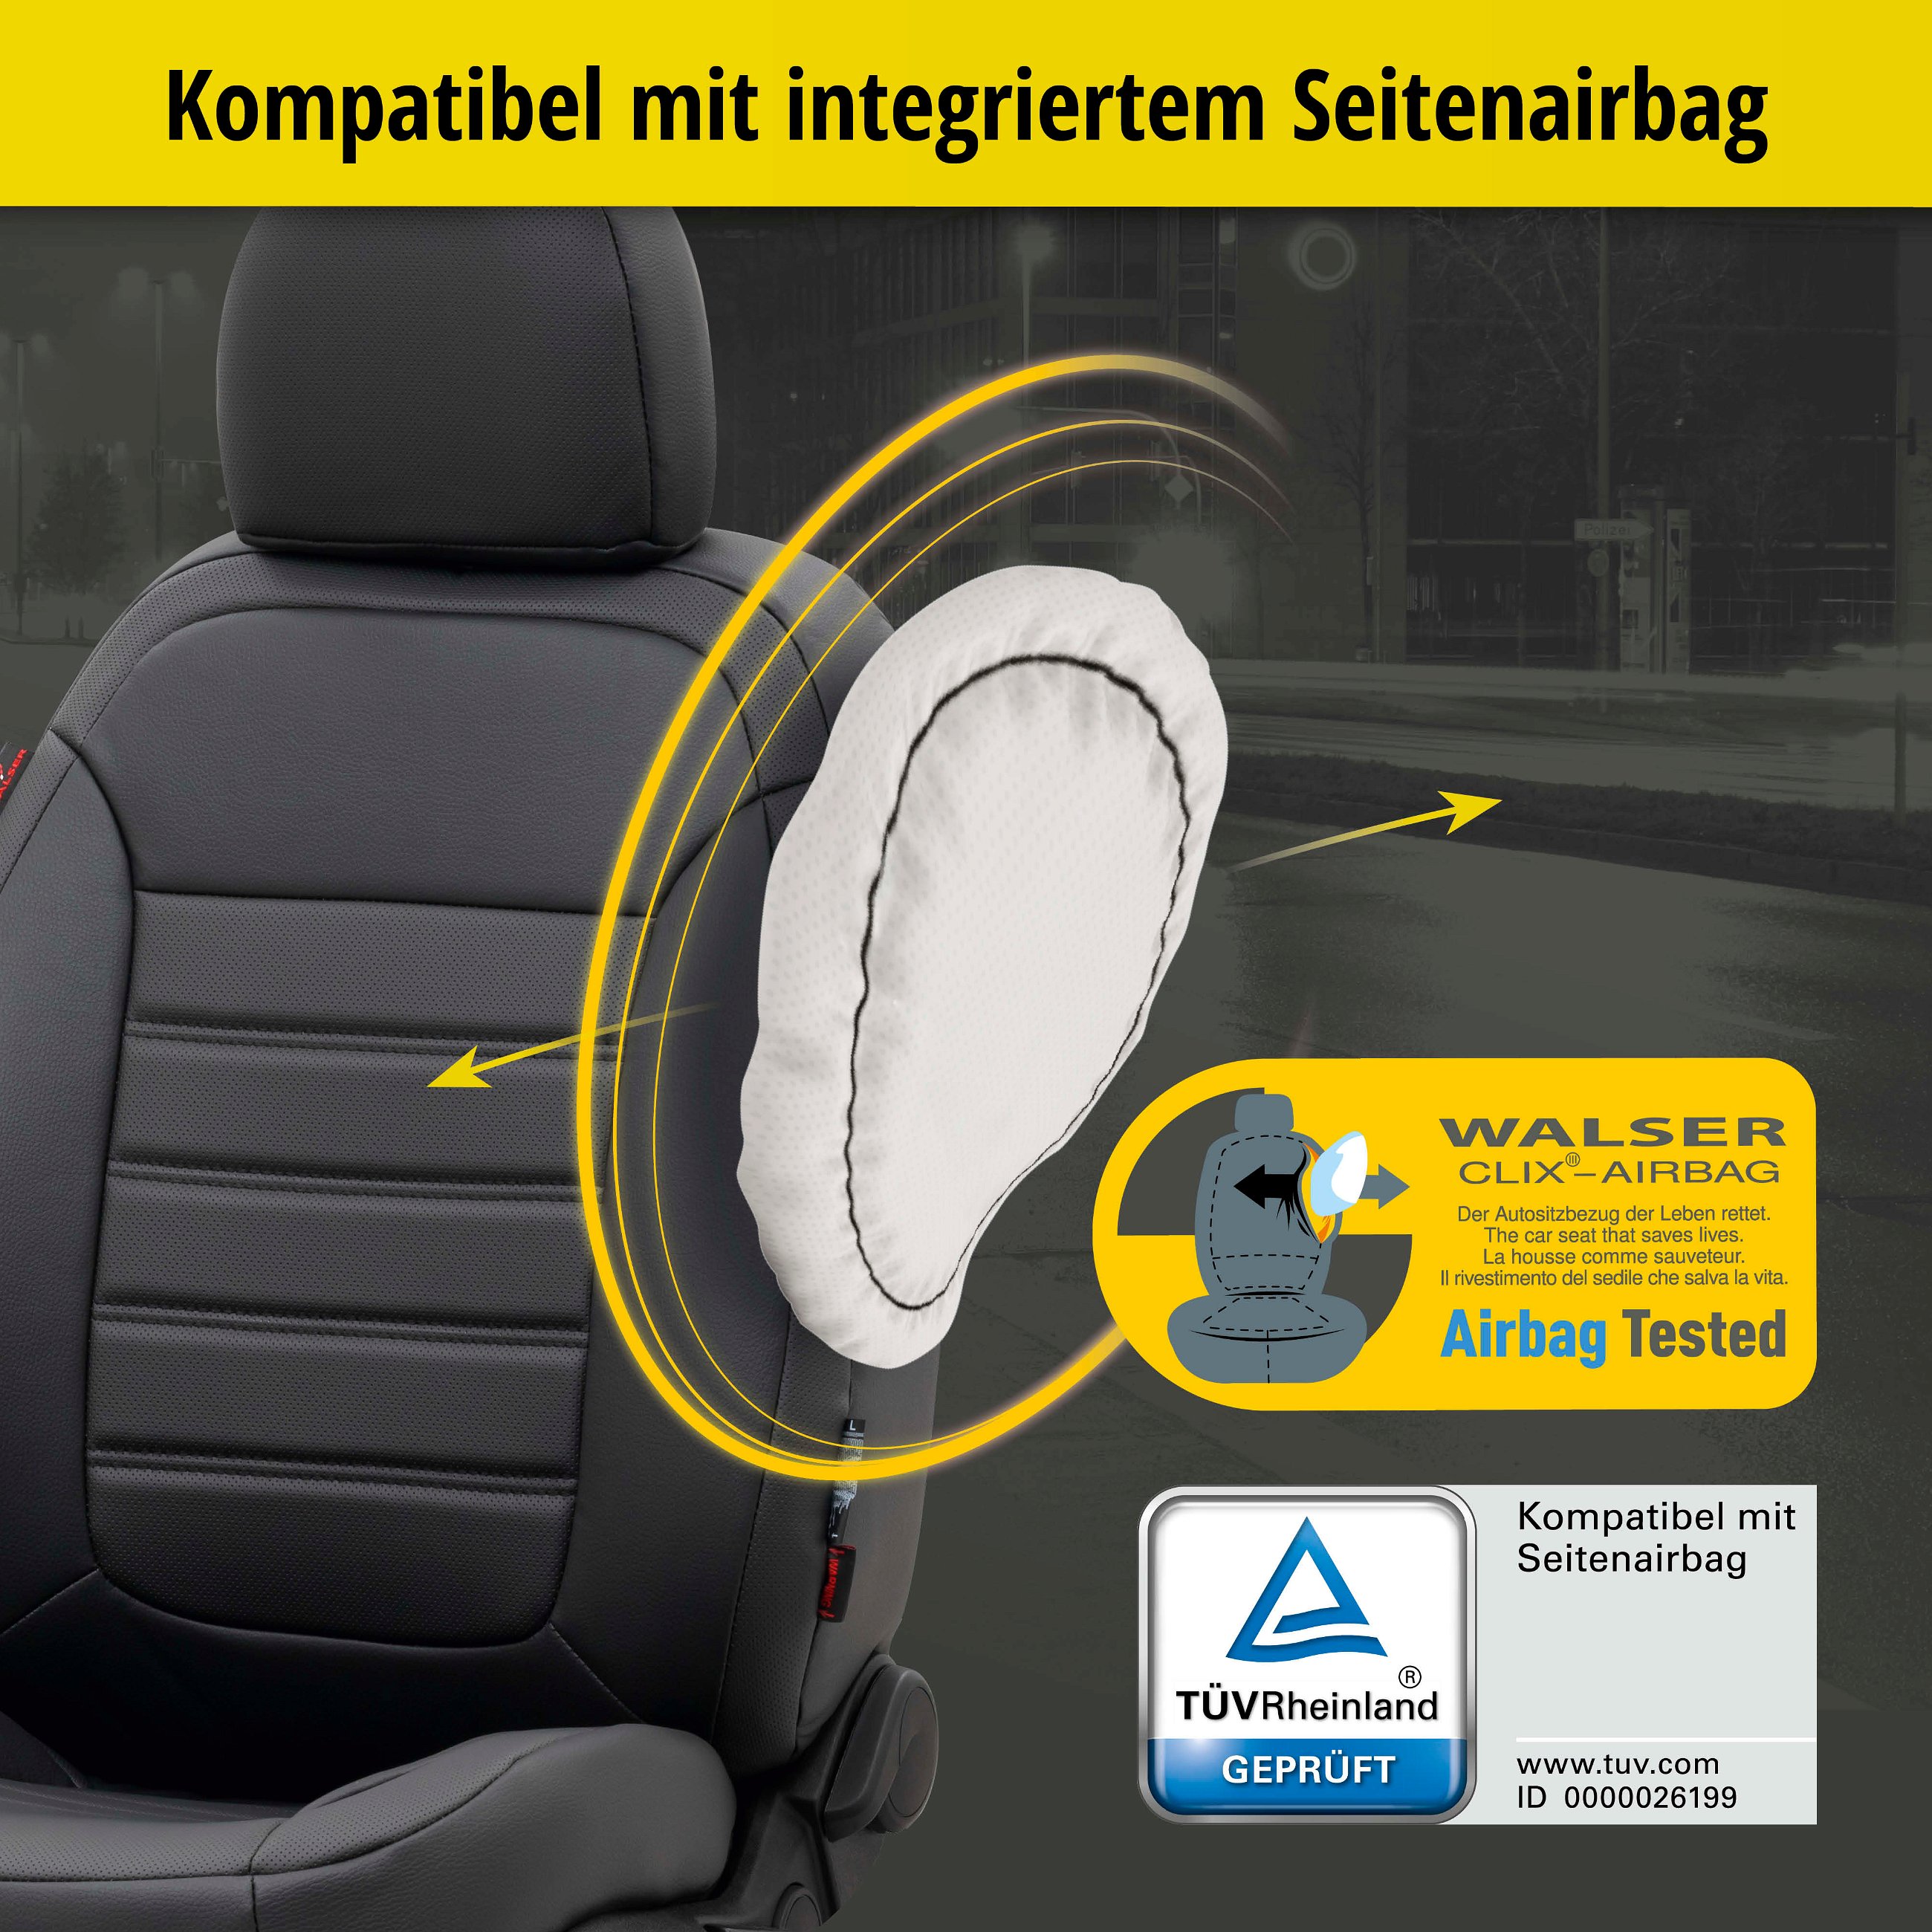 Passform Sitzbezug Robusto für VW Polo (6R1, 6C1) 03/2009-Heute, 2 Einzelsitzbezüge für Normalsitze